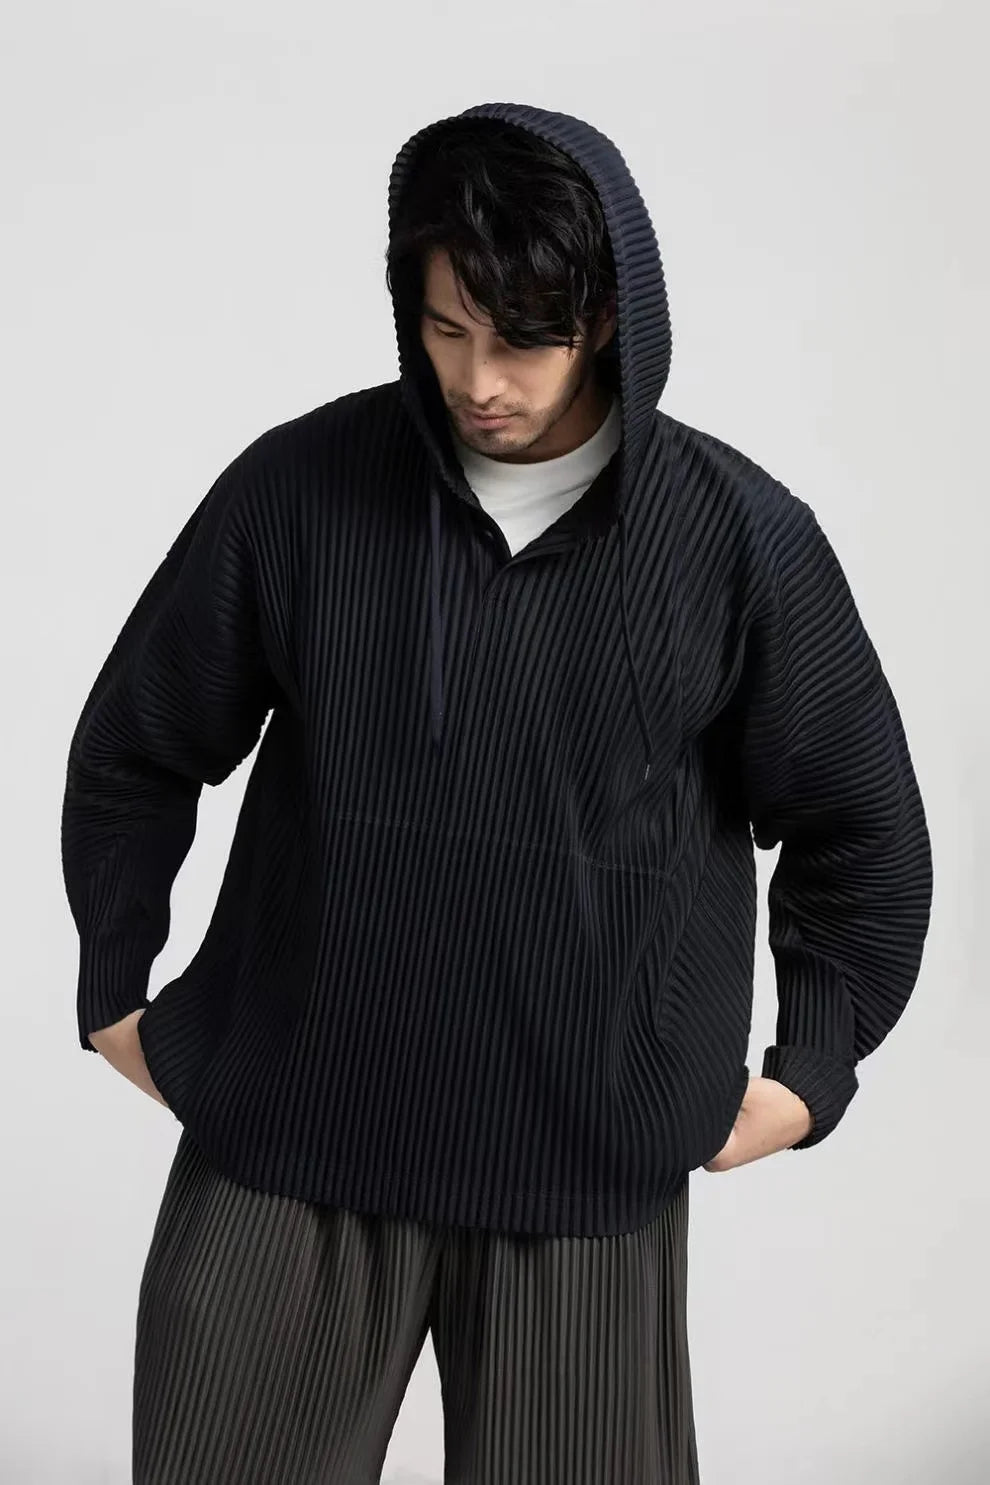 Miyake Pleated Hoodies For Men black hoodies for men